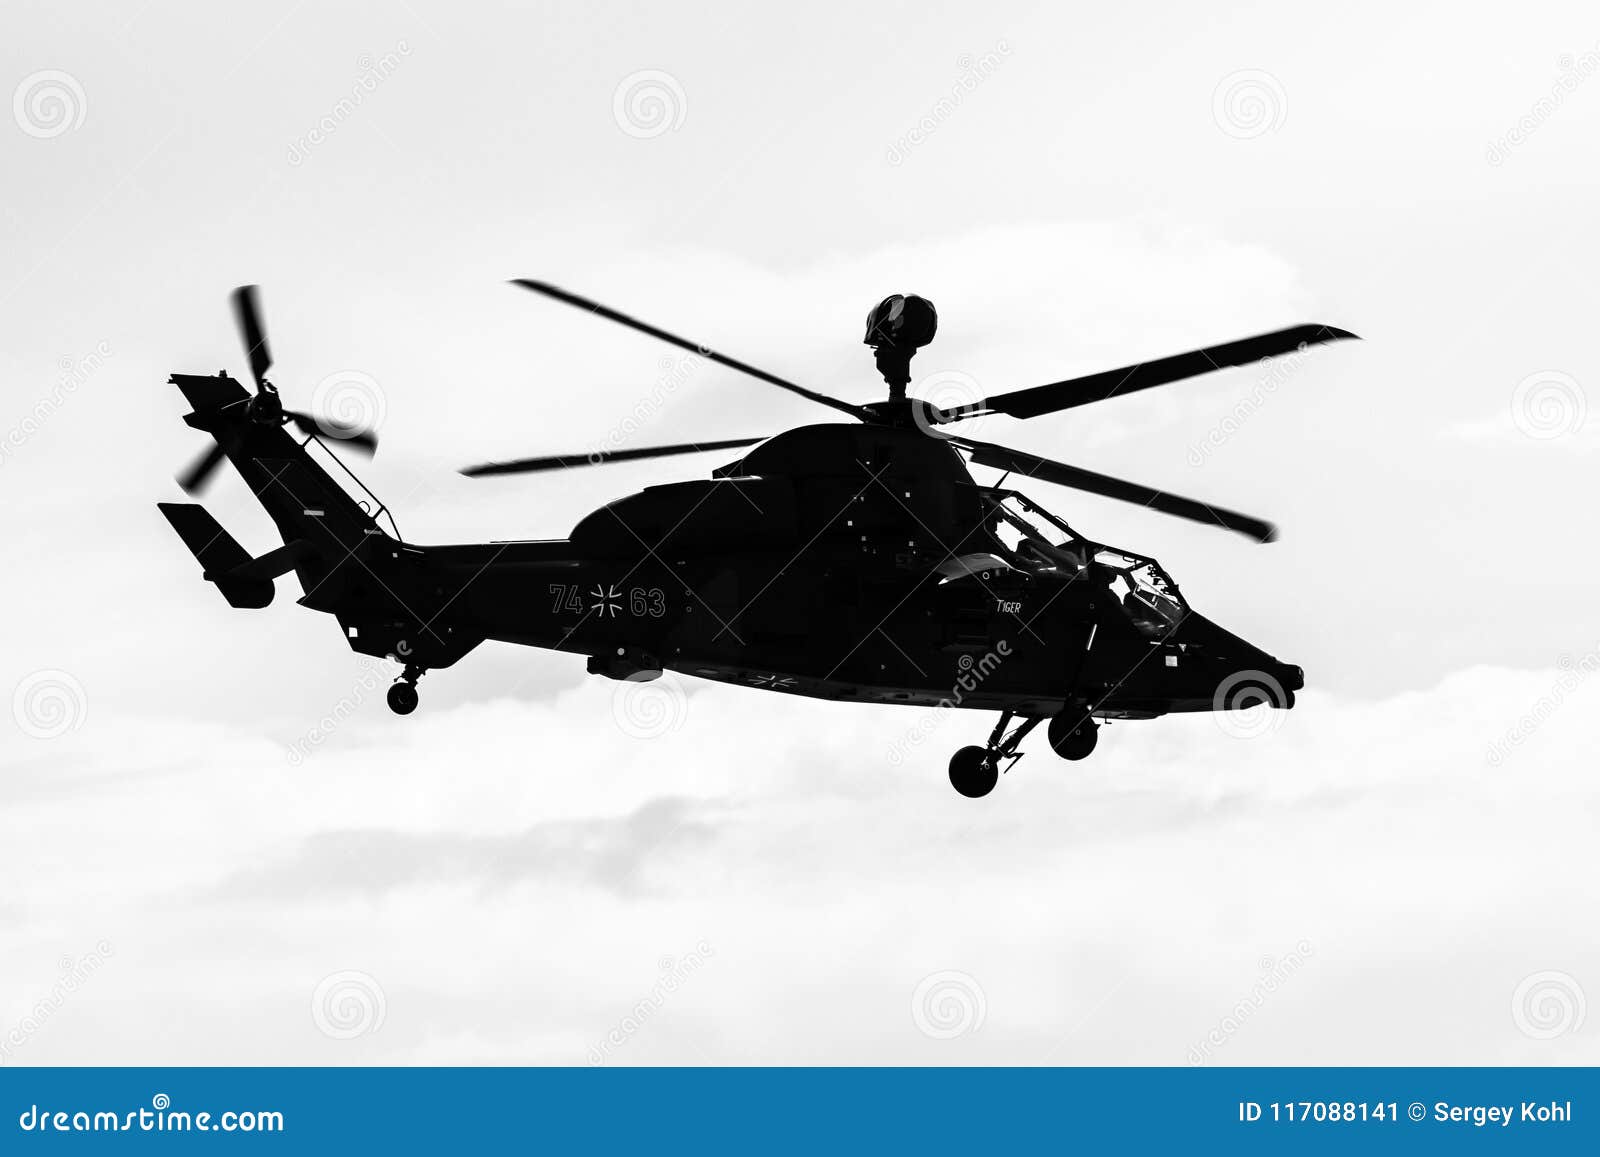 ΒΕΡΟΛΙΝΟ, ΓΕΡΜΑΝΙΑ - 26 ΑΠΡΙΛΊΟΥ 2018: Πτήση επίδειξης του UHT τιγρών Eurocopter επιθετικών ελικοπτέρων Γερμανική Πολεμική Αεροπορία μαύρο λευκό Ο αέρας έκθεσης ILA Βερολίνο παρουσιάζει 2018